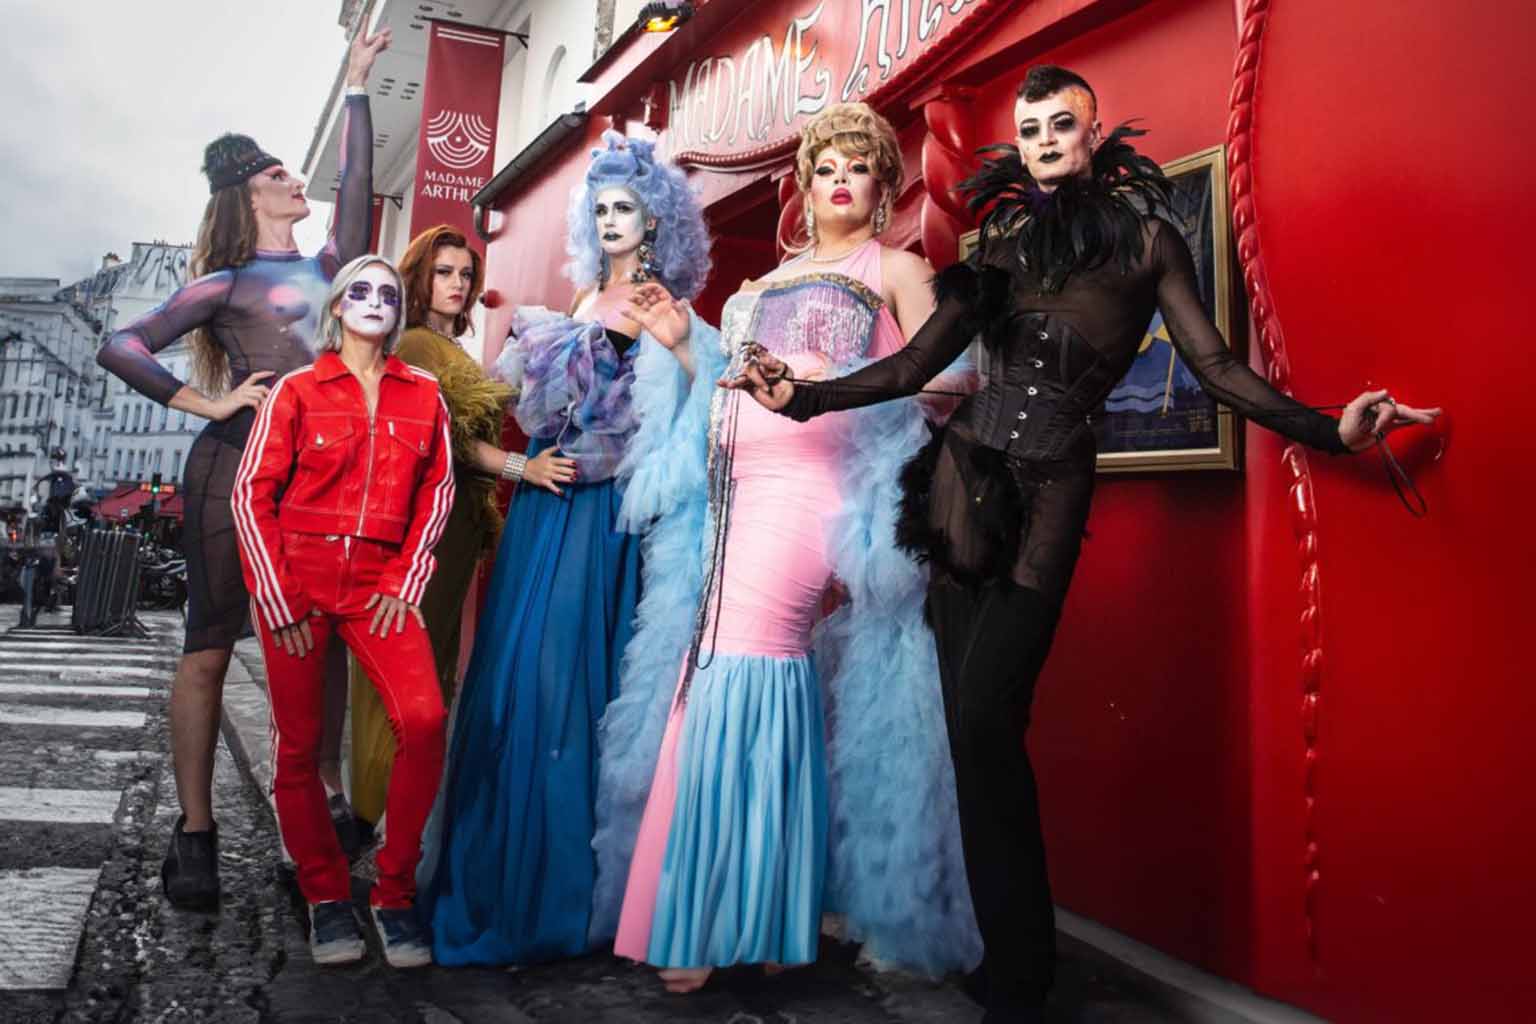 Madame arthur drag queen cabaret club divan du monde boite de nuit paris